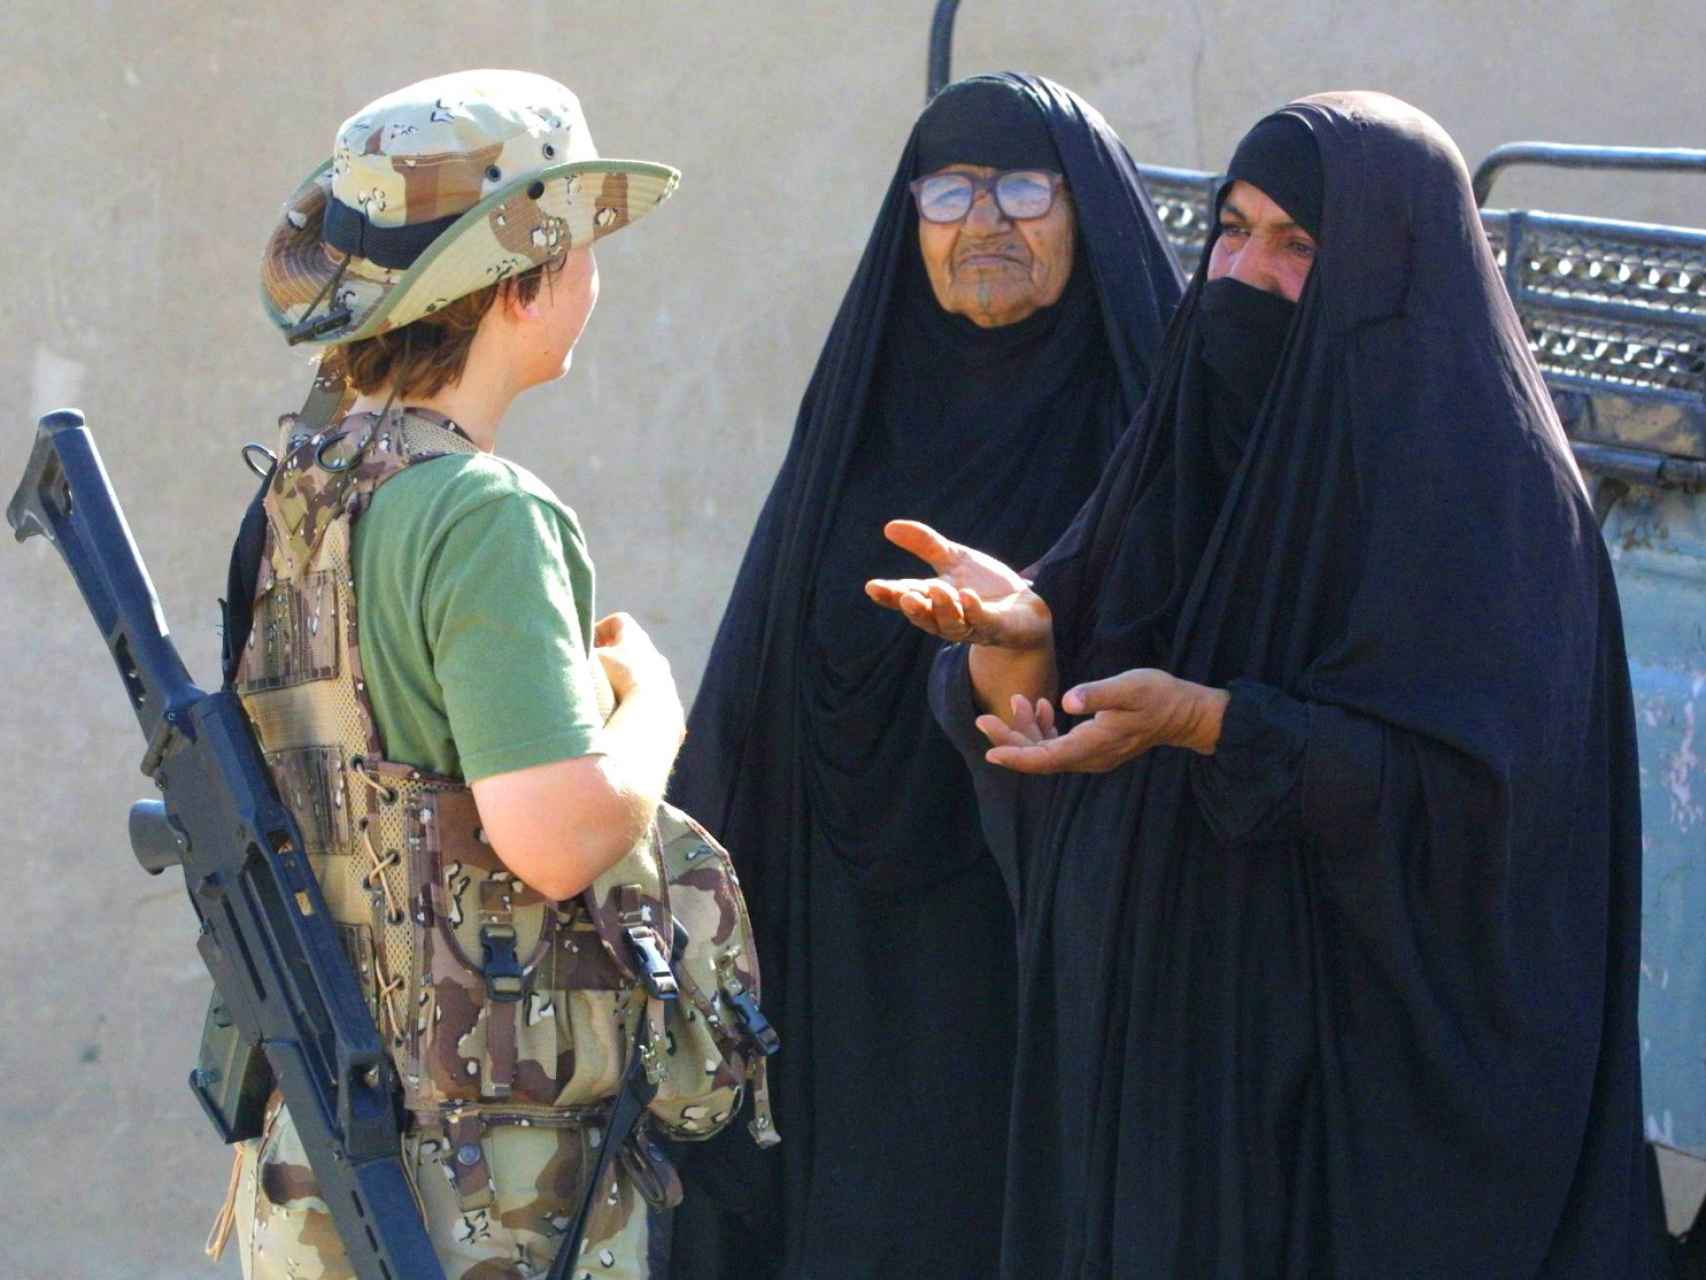 Una militar española junto a dos mujeres en una operación internacional.